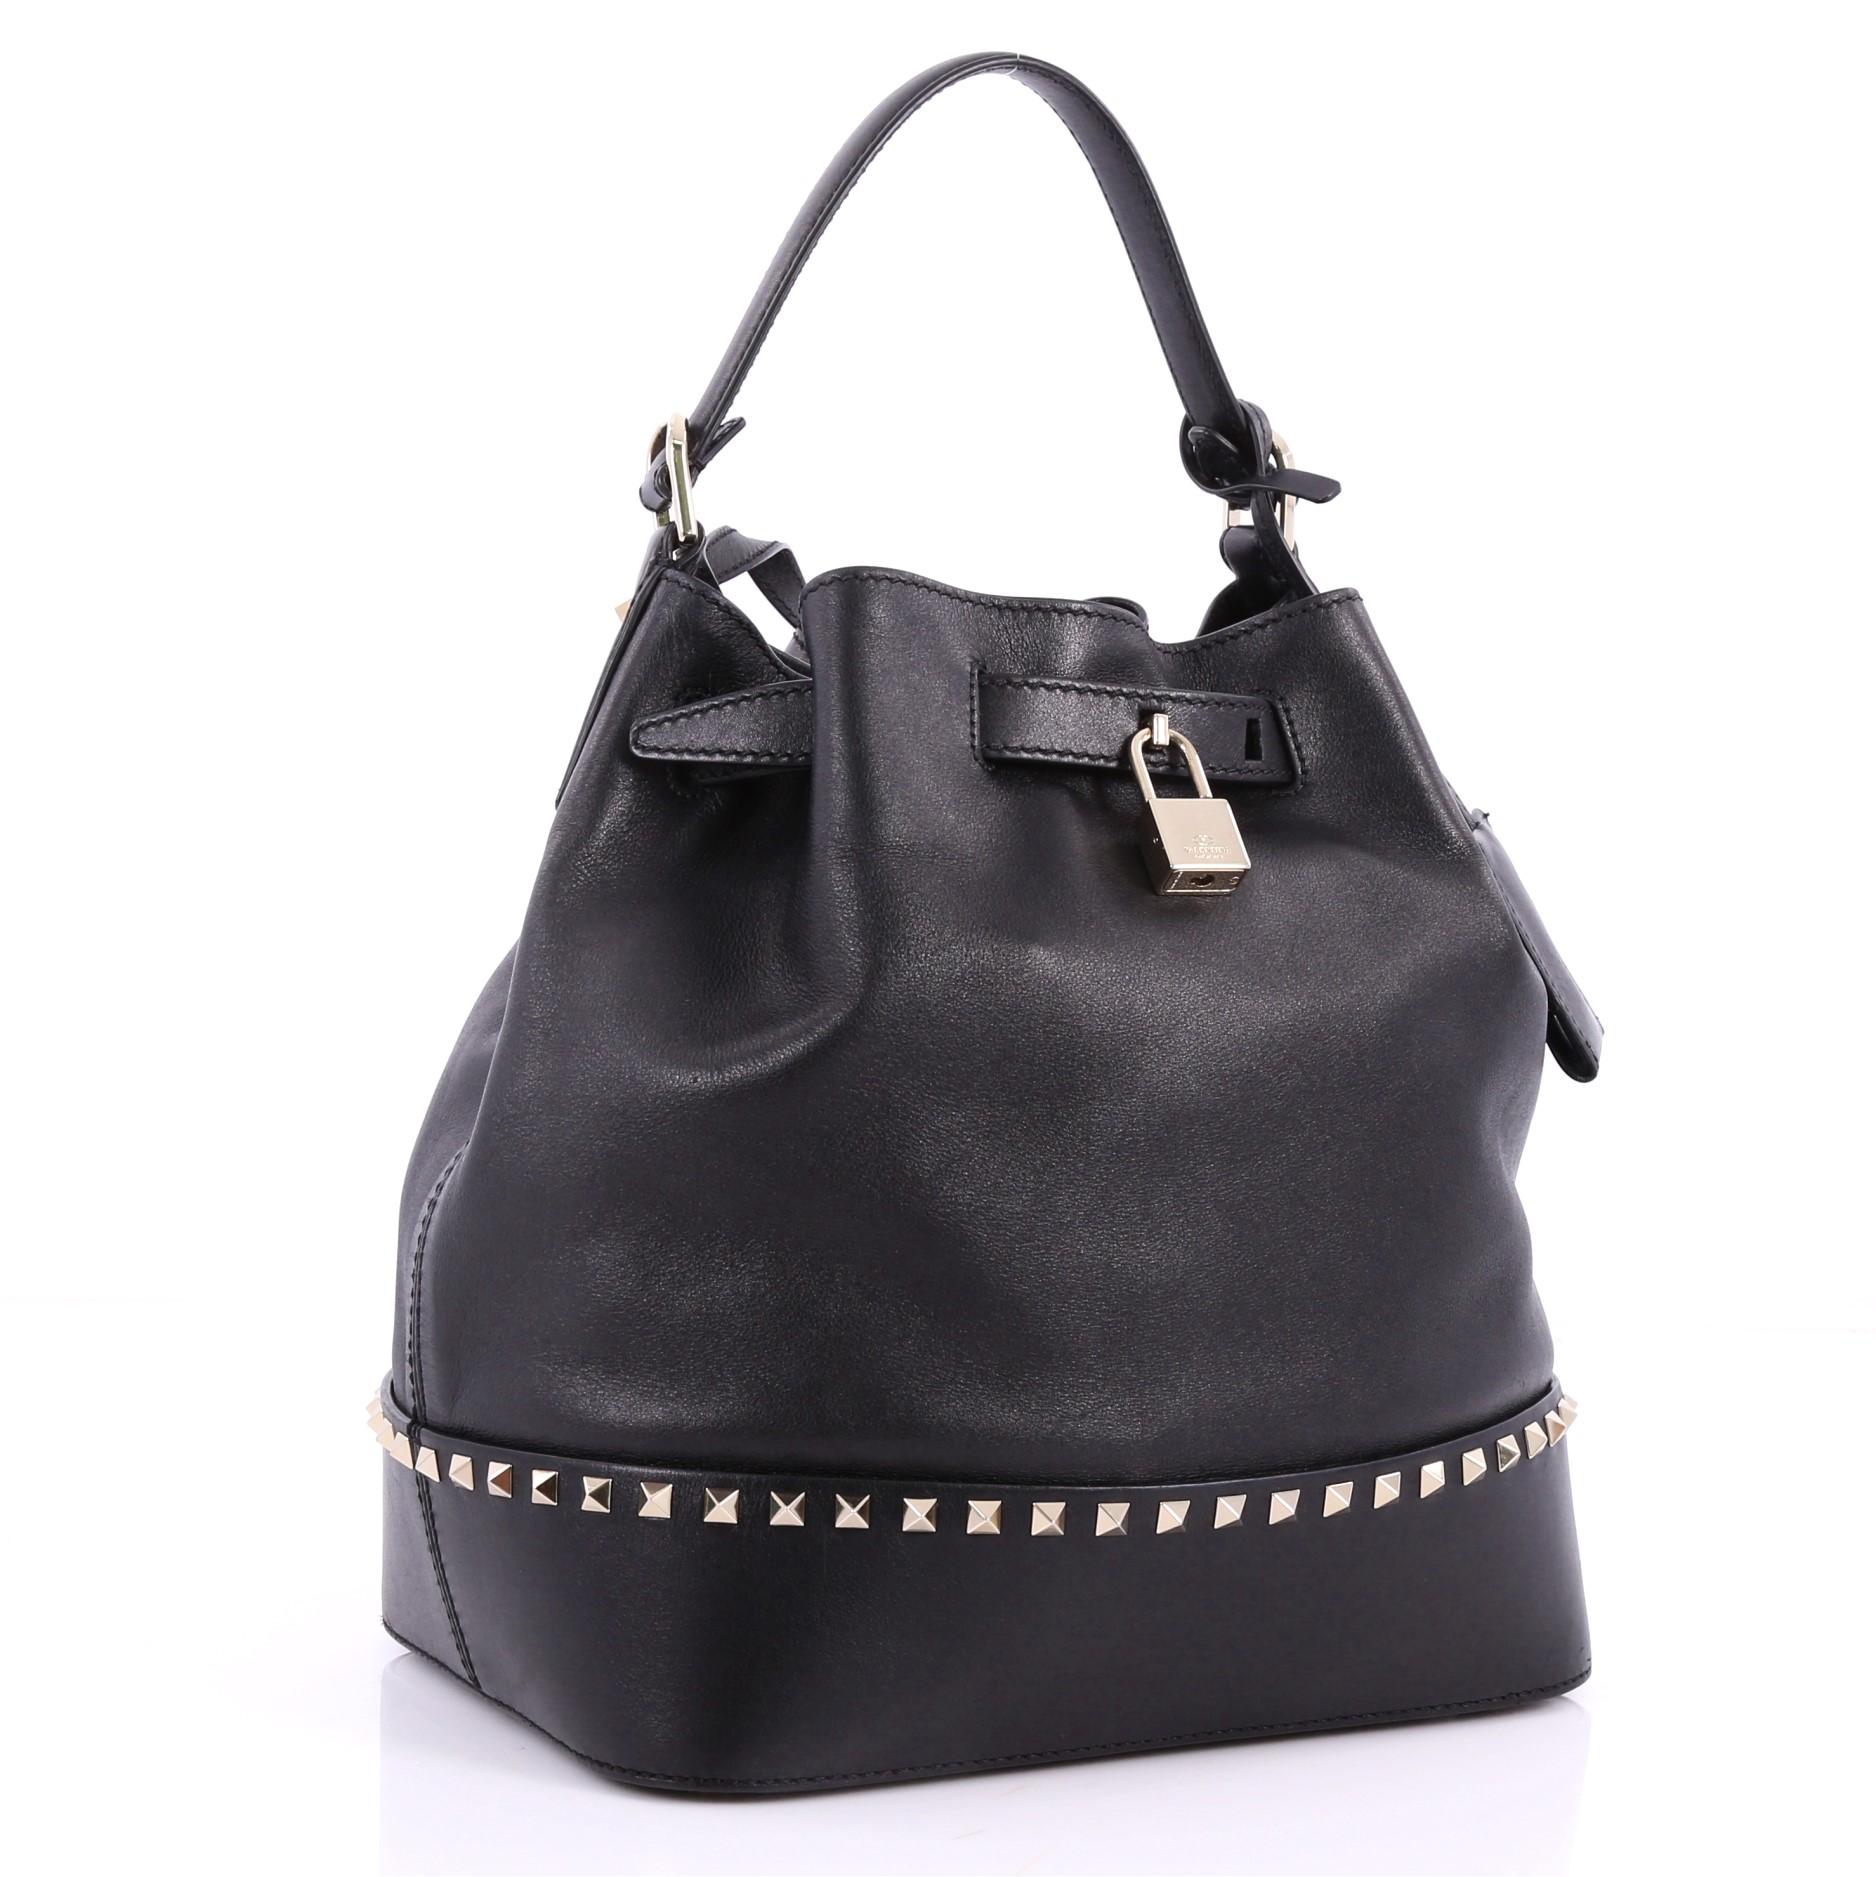 Black Valentino Rockstud Top Handle Bucket Bag Leather Medium 